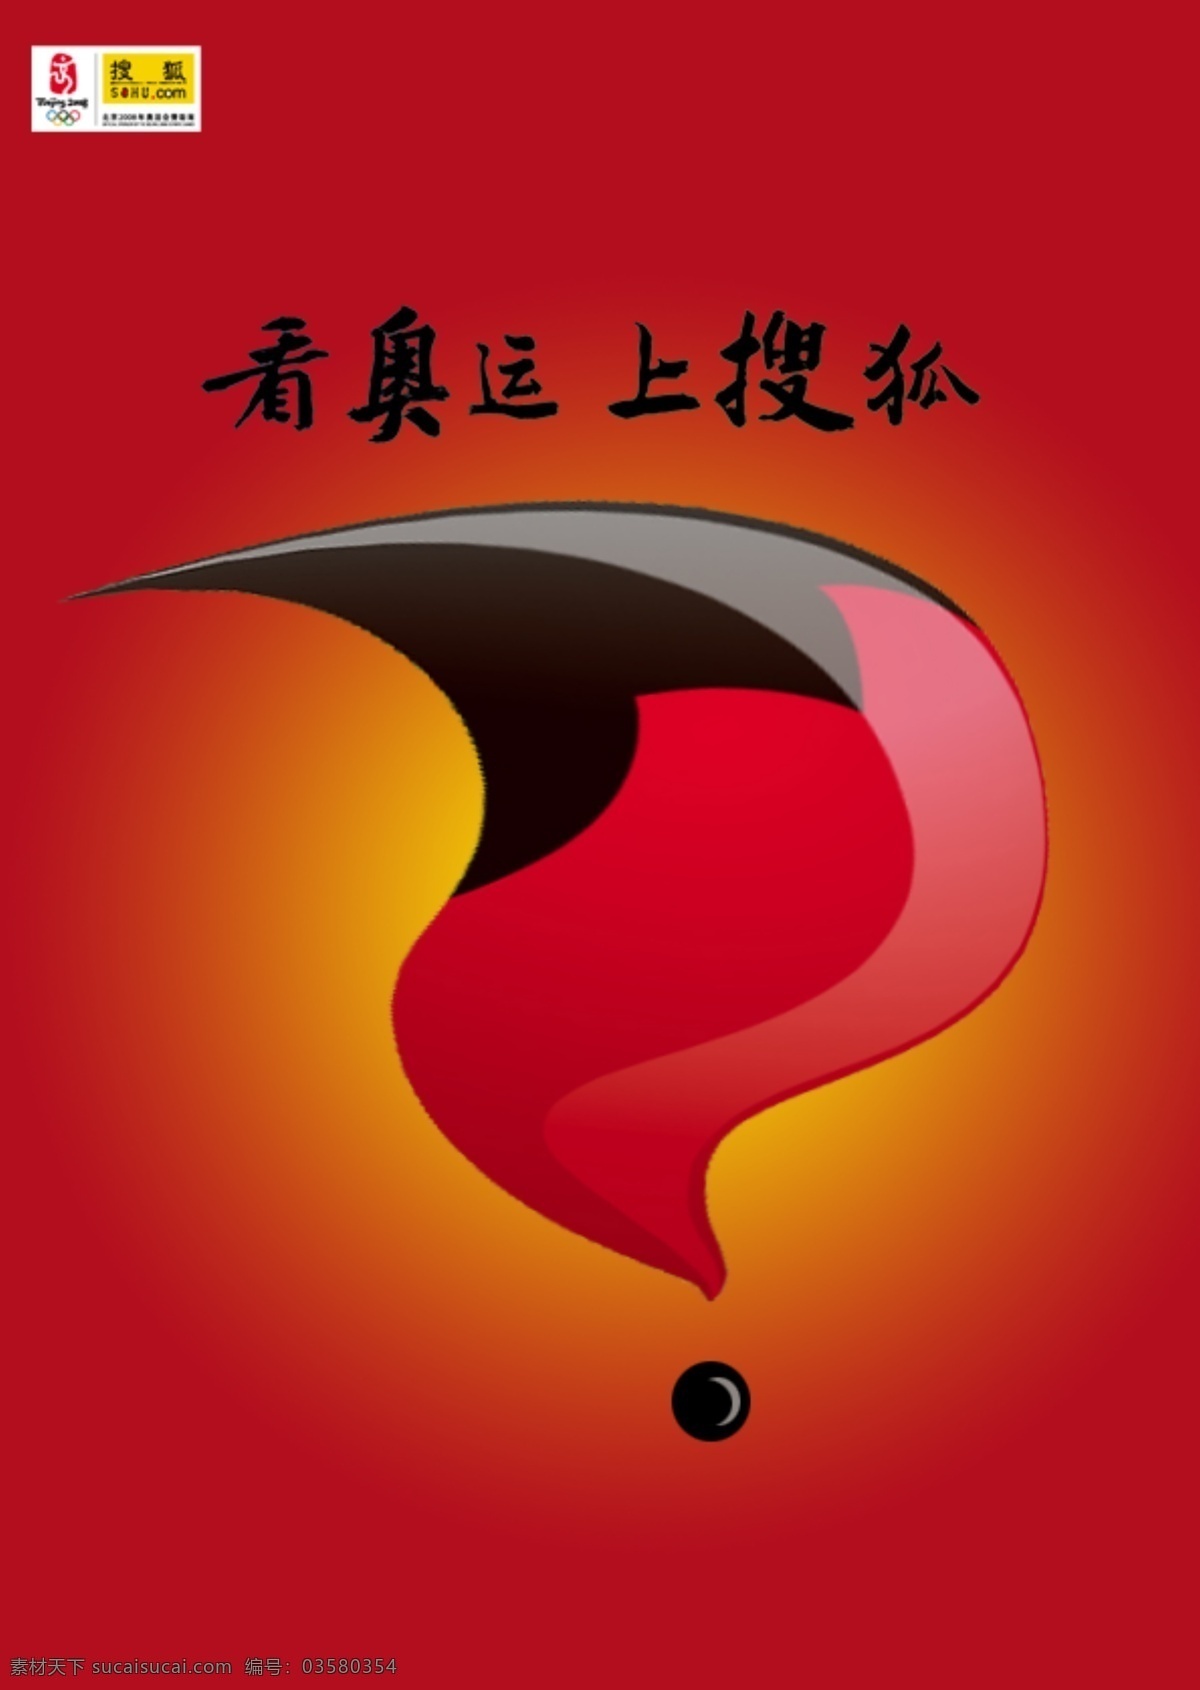 上搜狐 看 奥运 搜狐 搜狐logo psd源文件